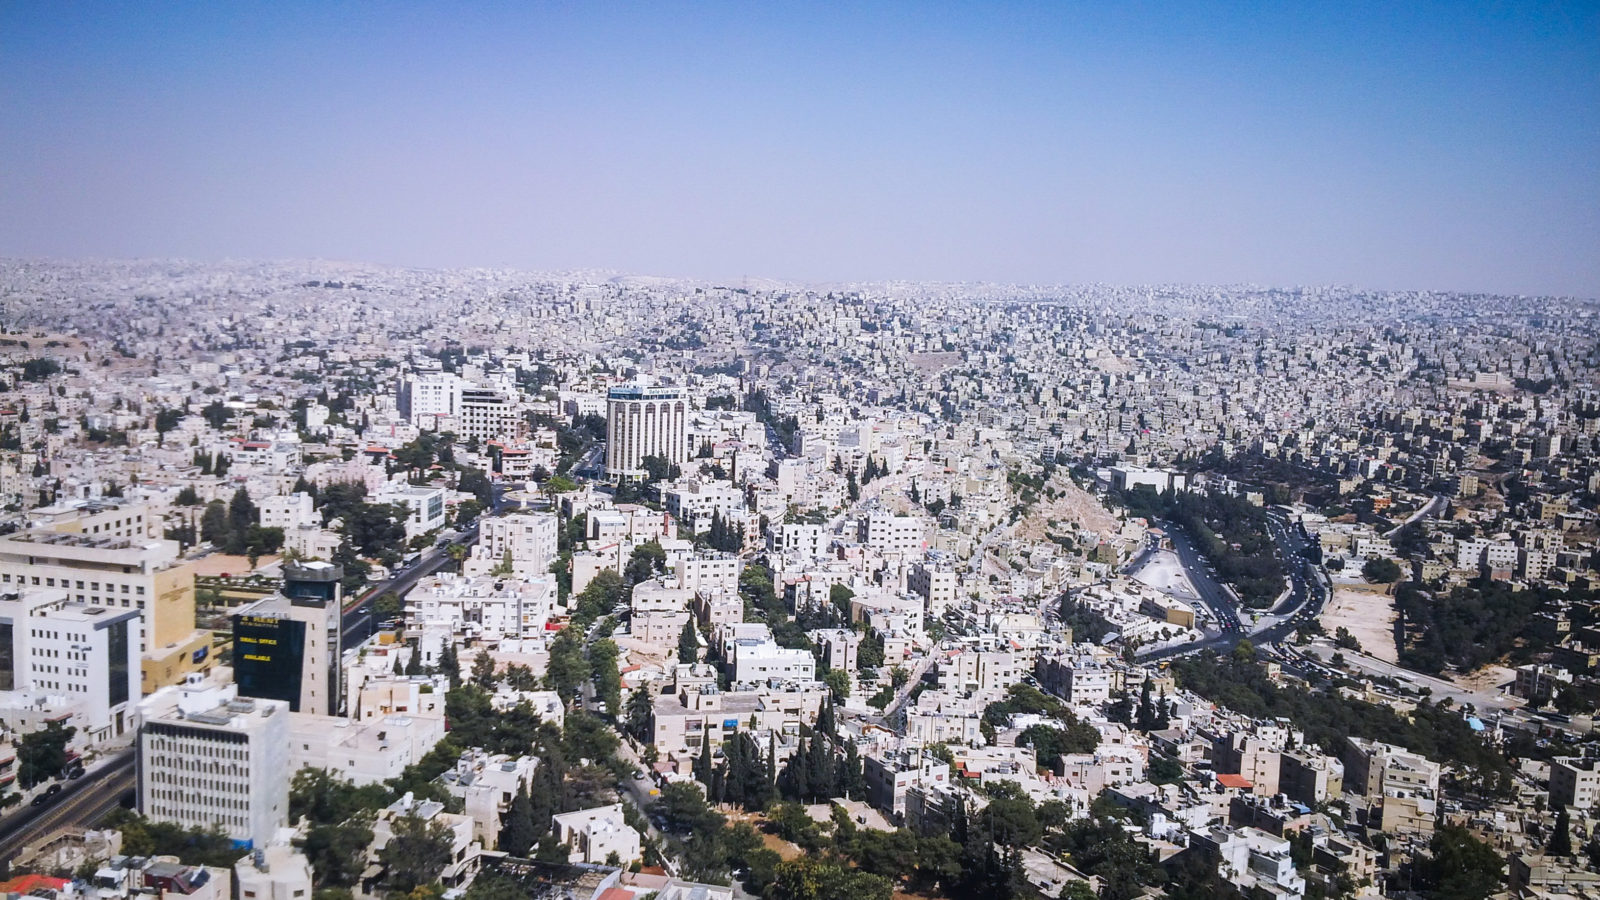 Concrete Jungle - Amman, the capital of Jordan